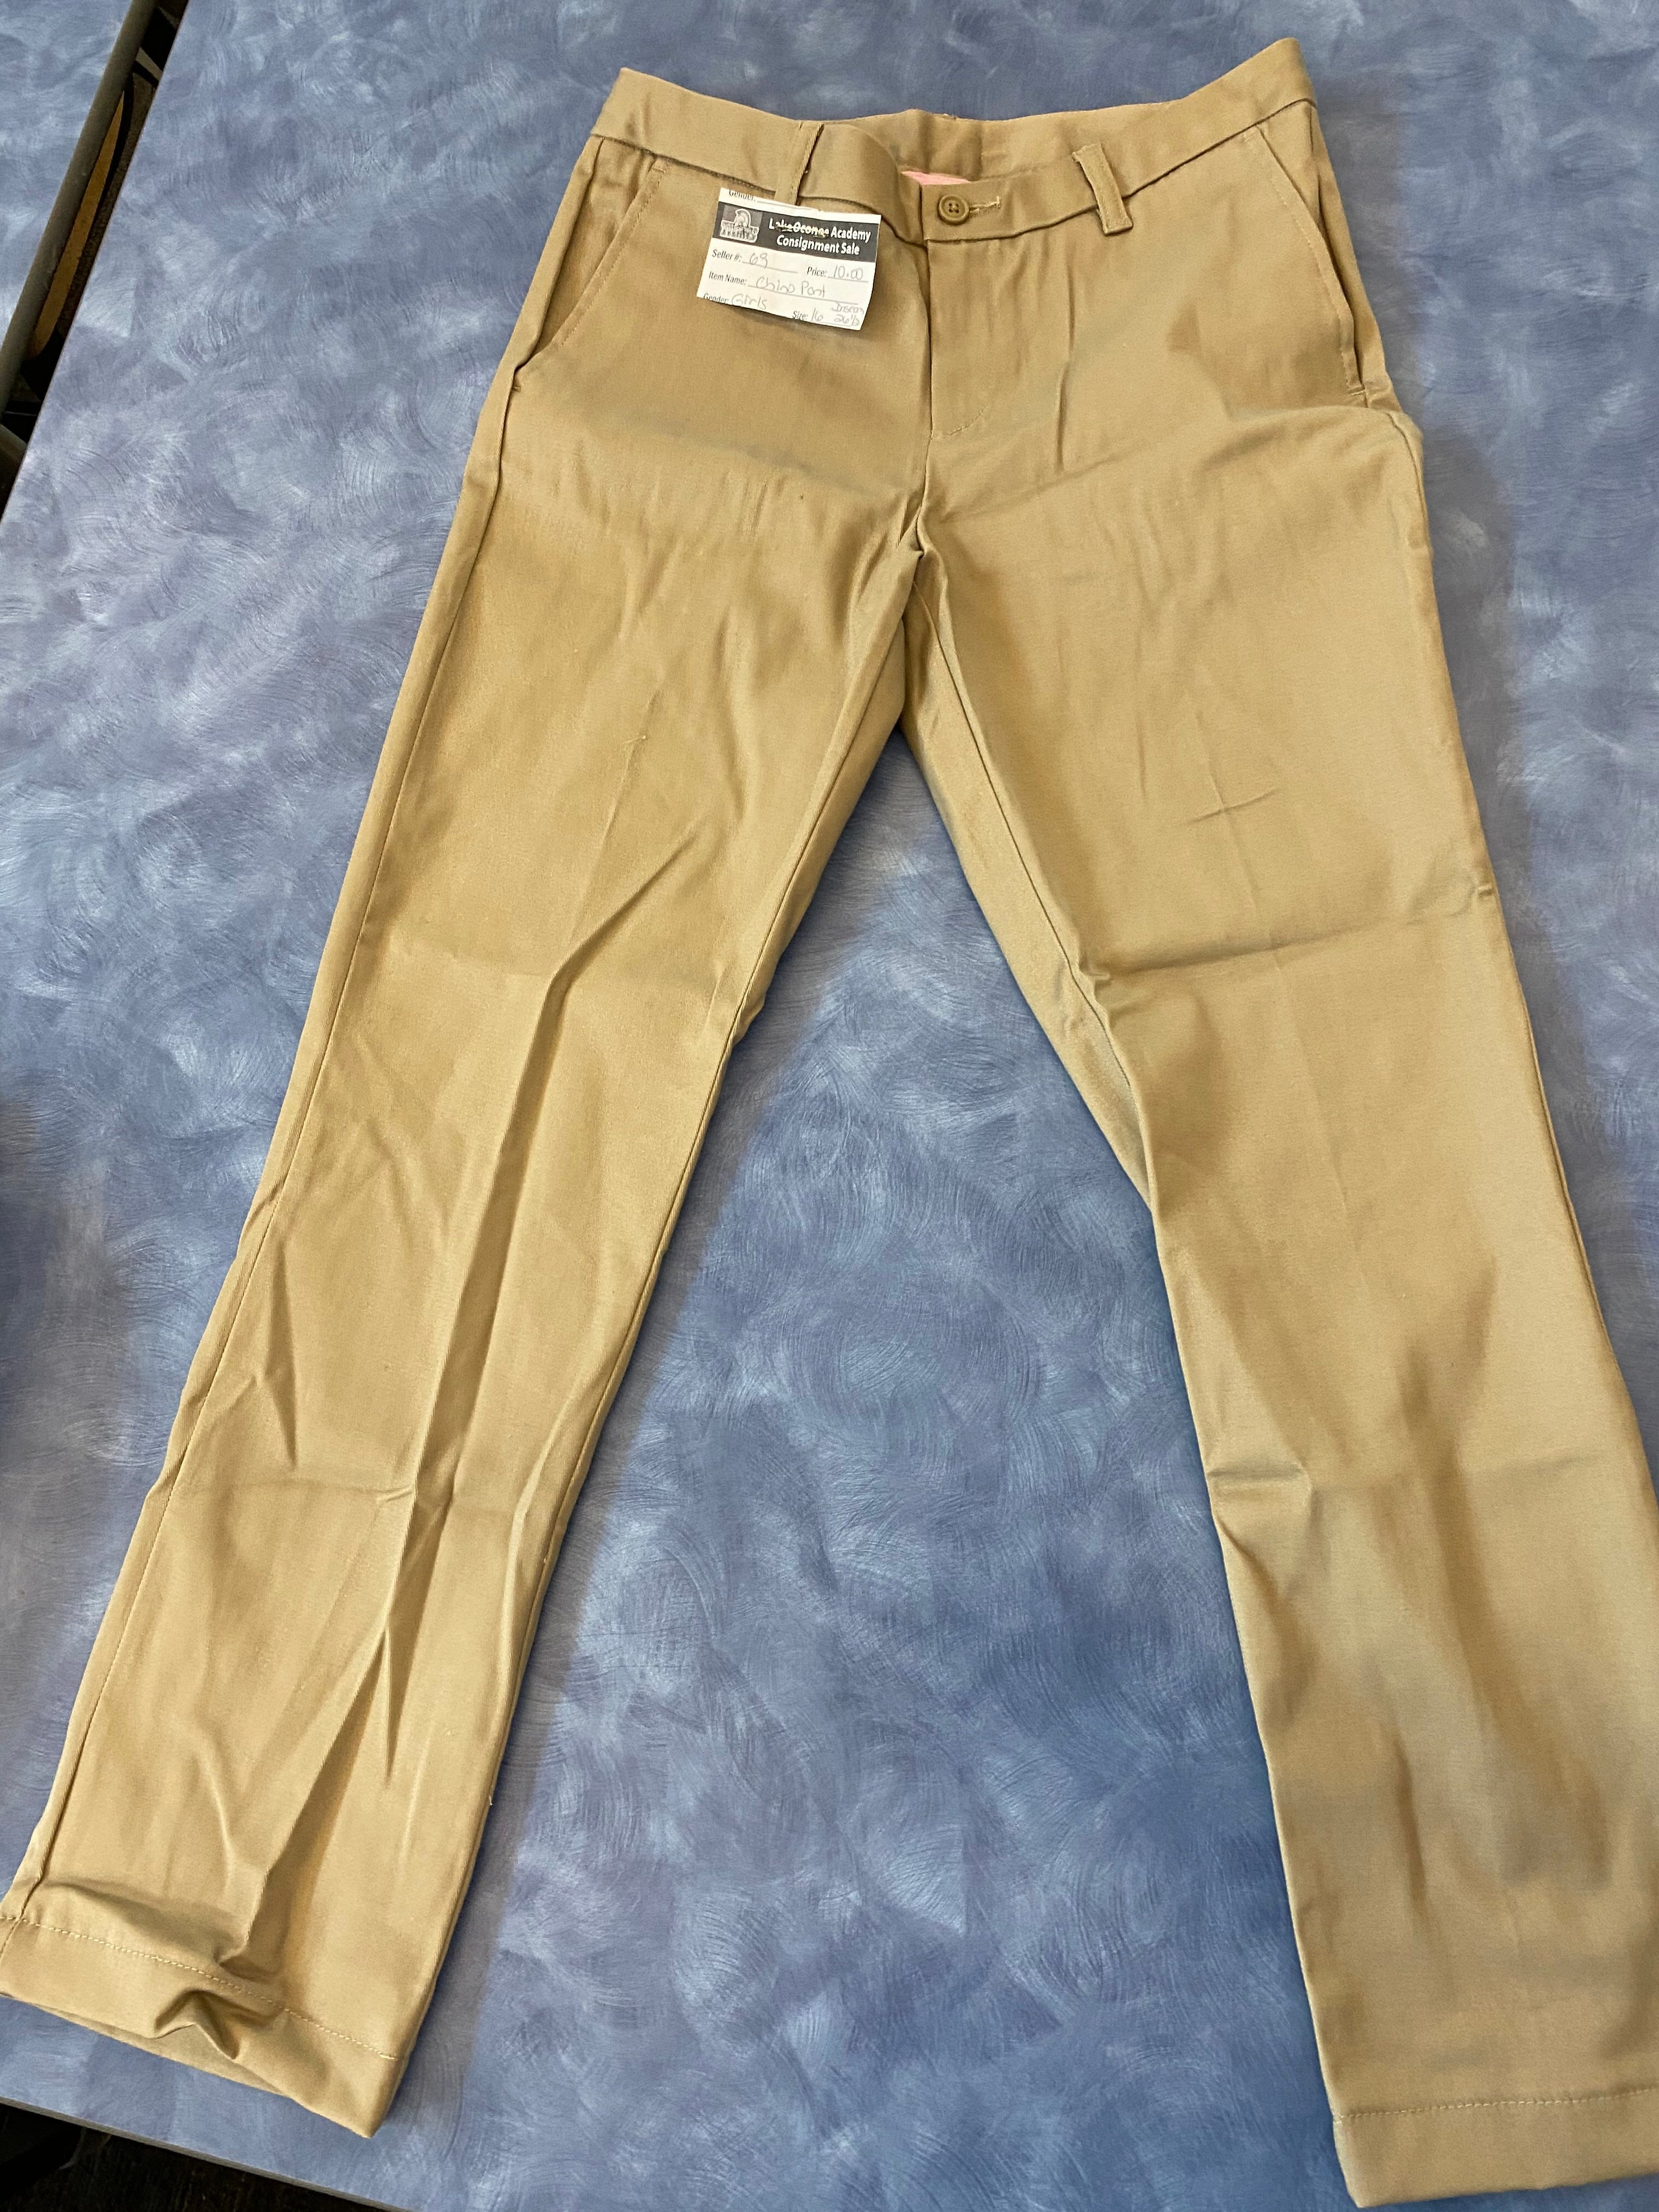 Khaki Pants, Girls, Size 16 26.5 inseam | LOA Armory